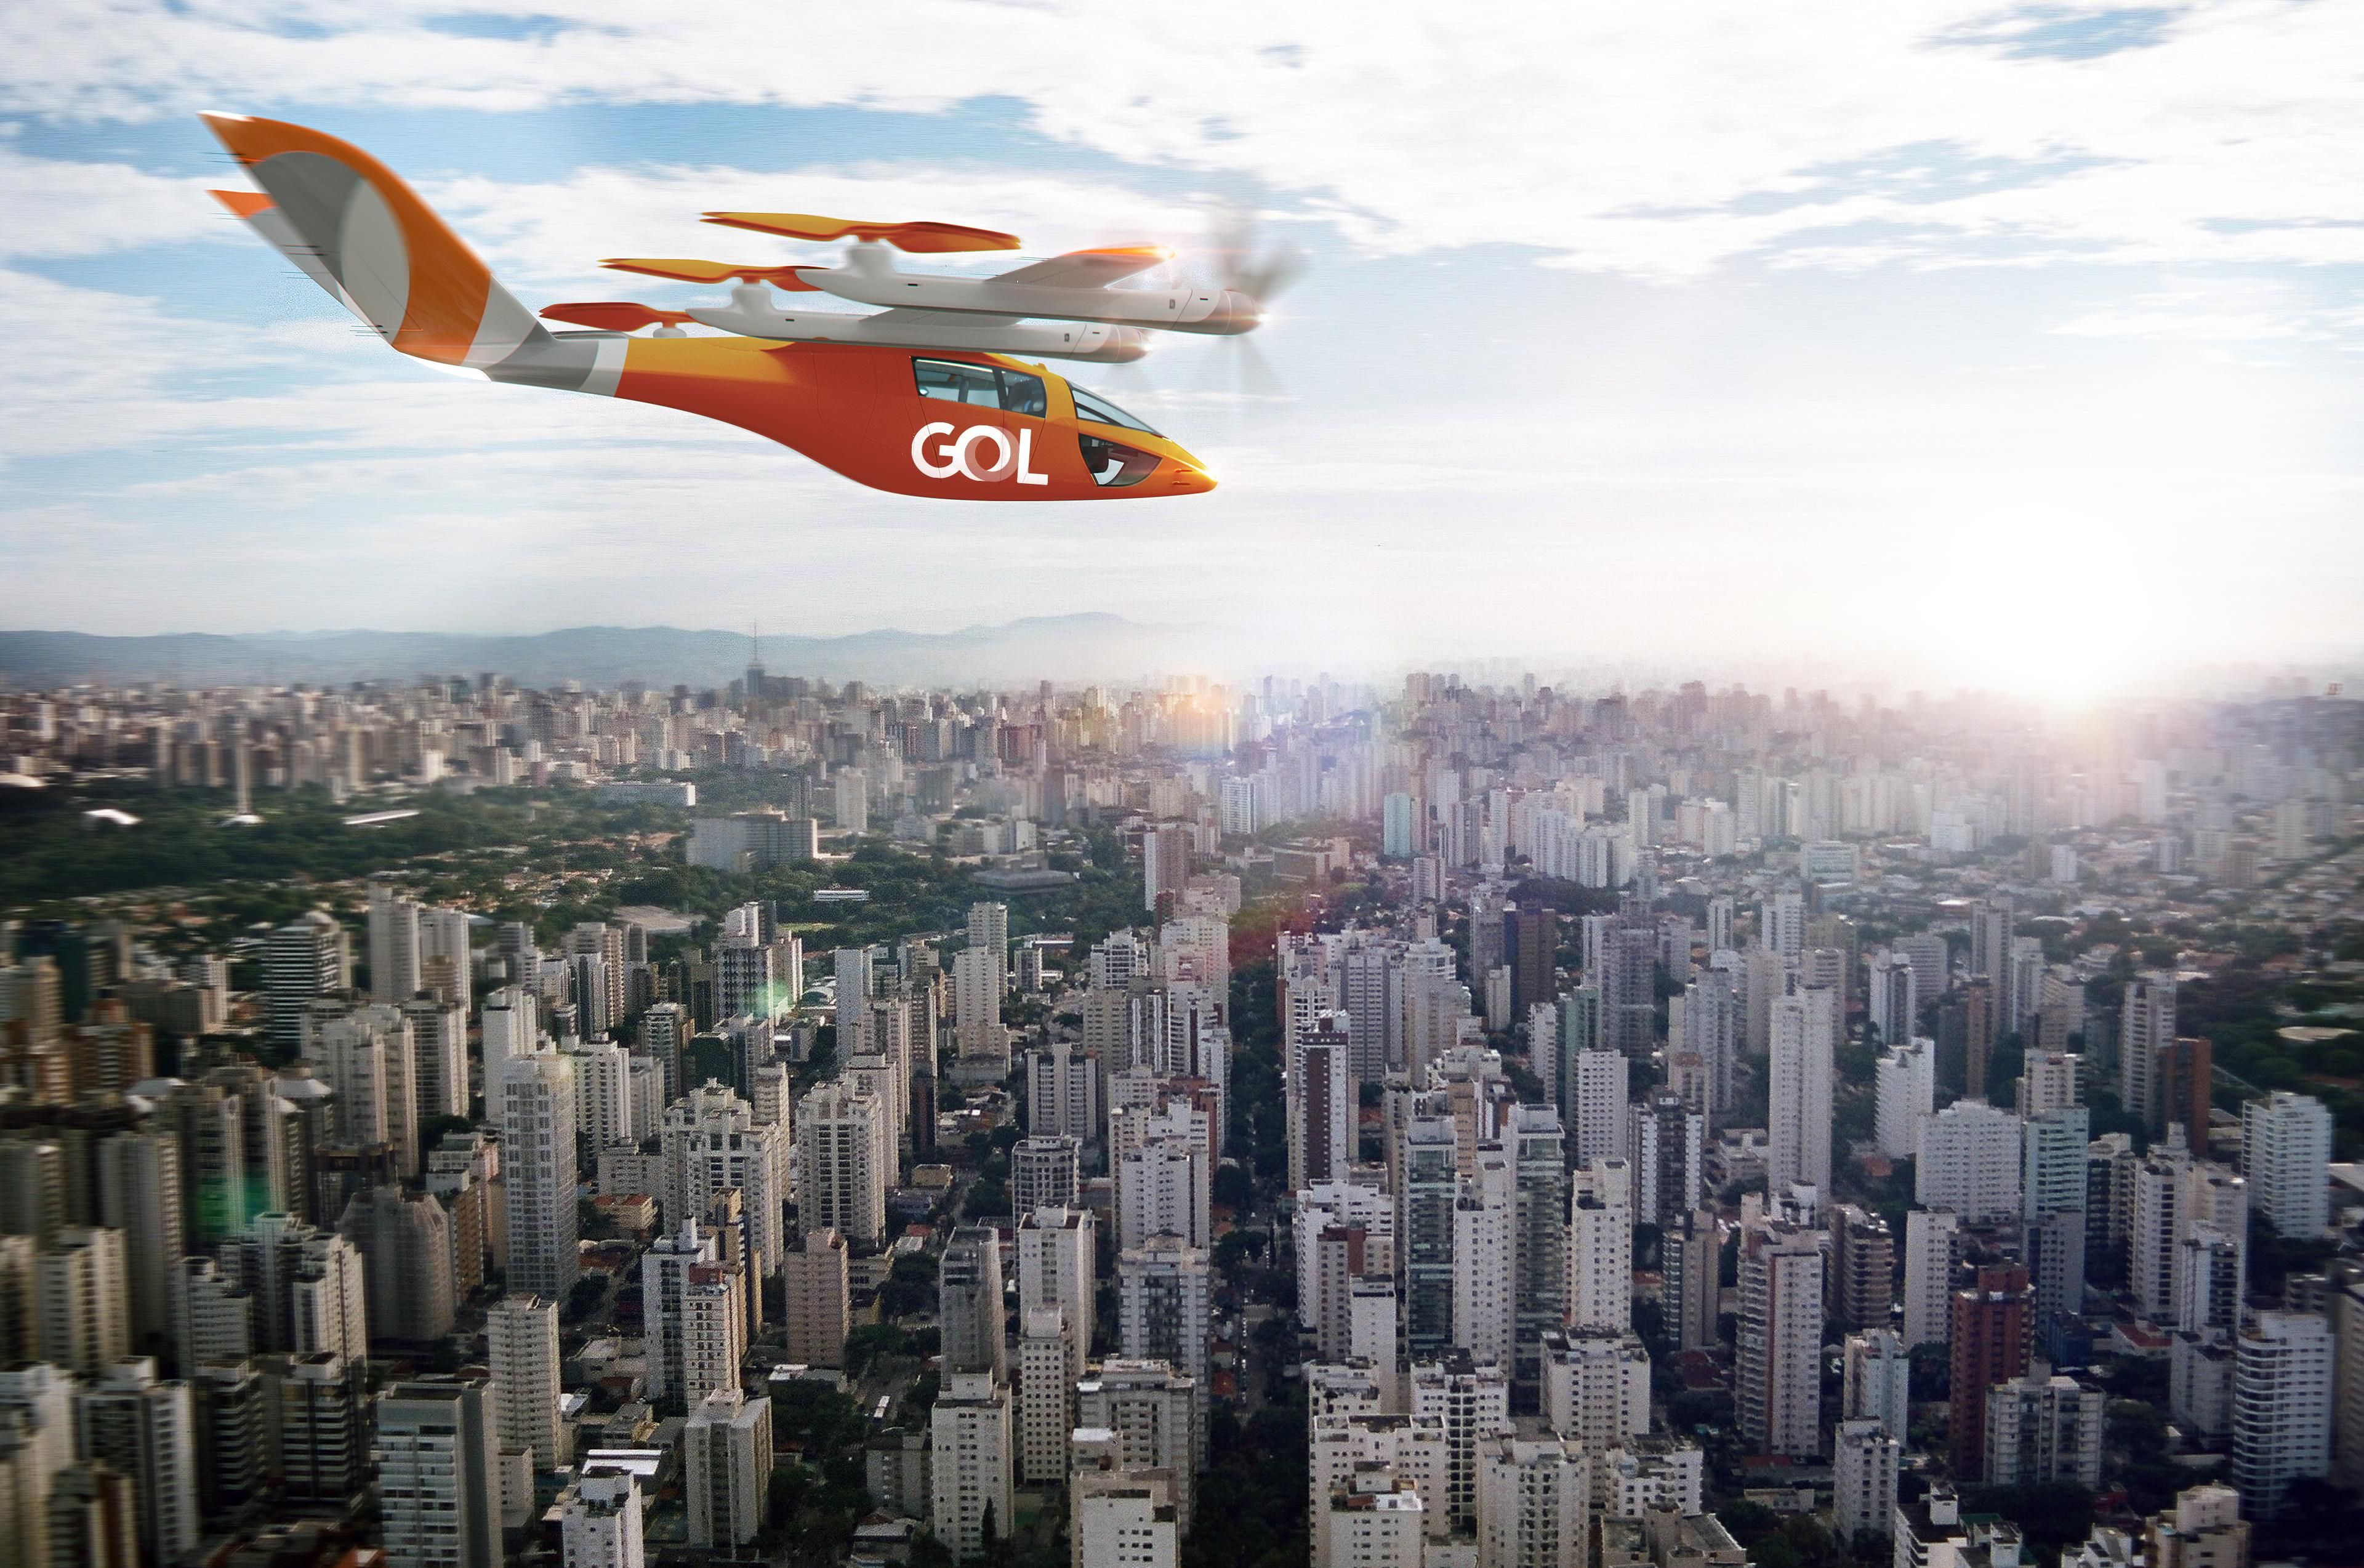 Imagen de un aerotaxi con los colores de la aerolínea brasileña Gol